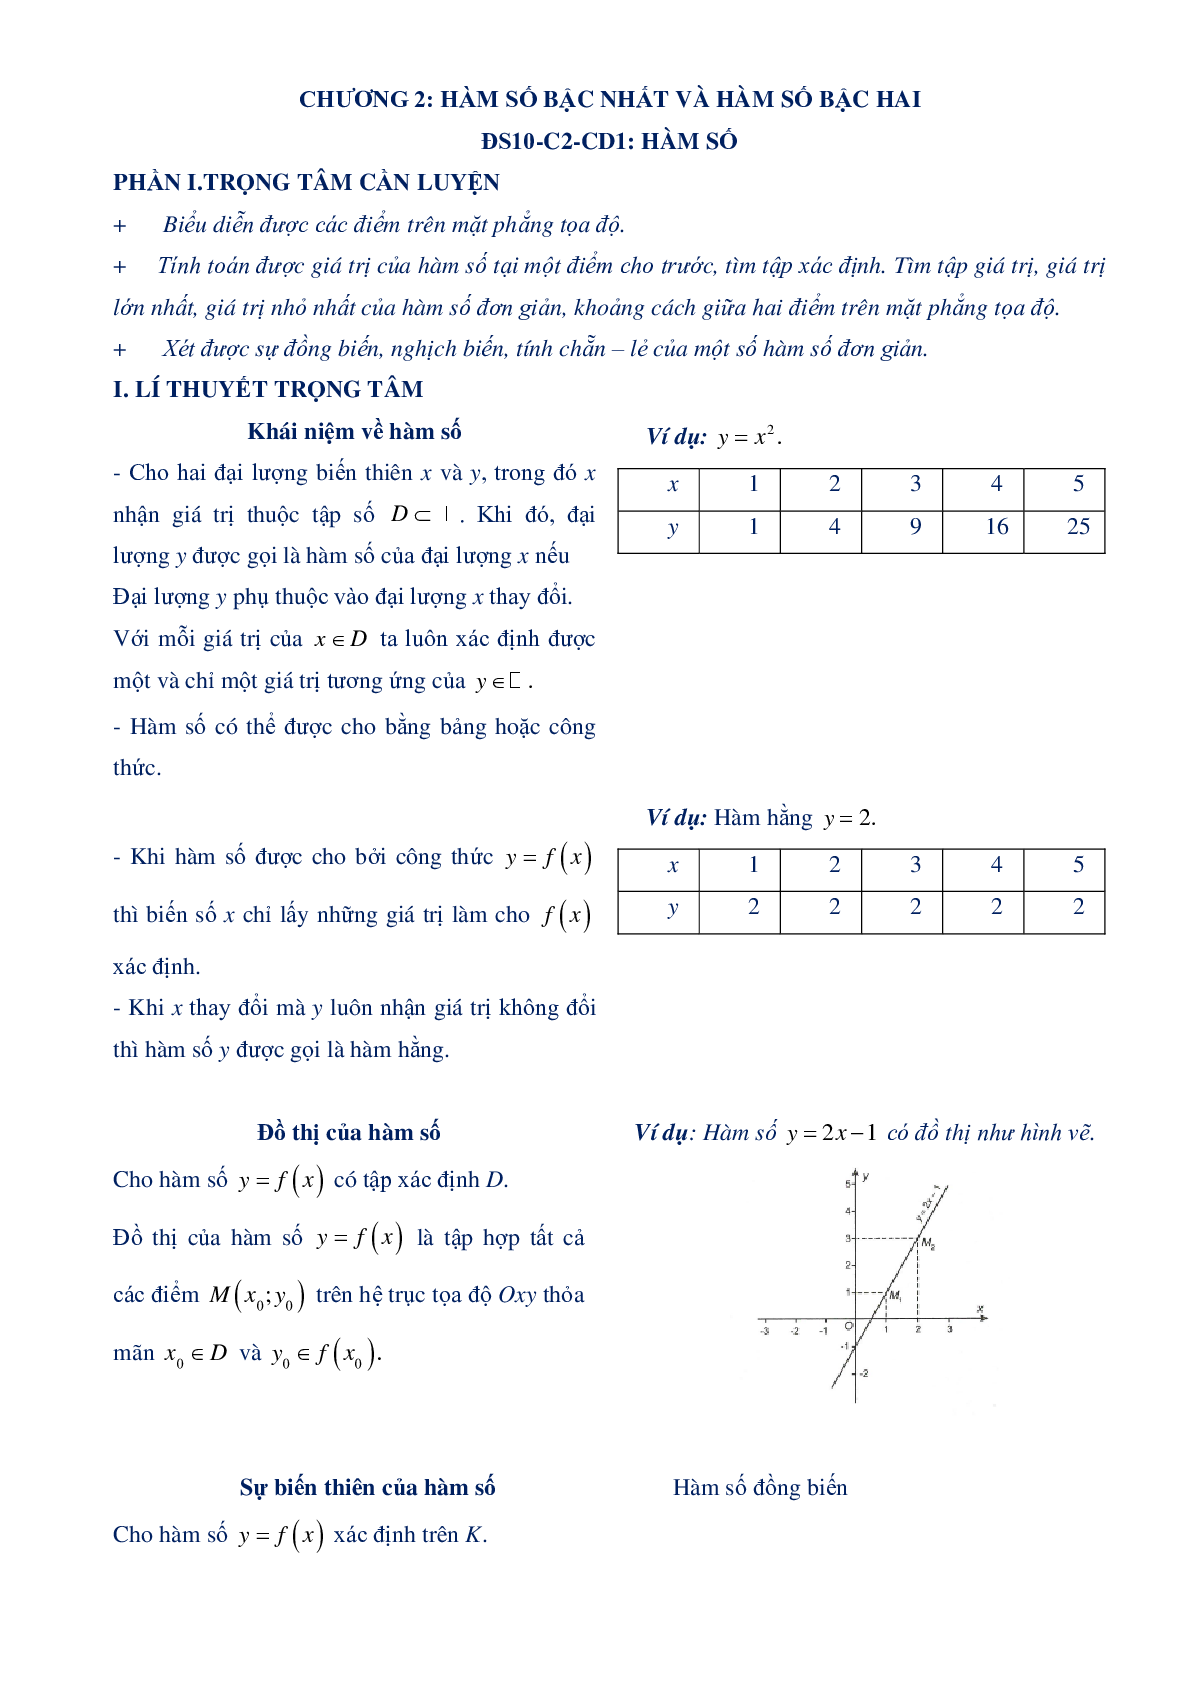 Chuyên đề hàm số bậc nhất và hàm số bậc 2 - Đại số 10 (trang 1)